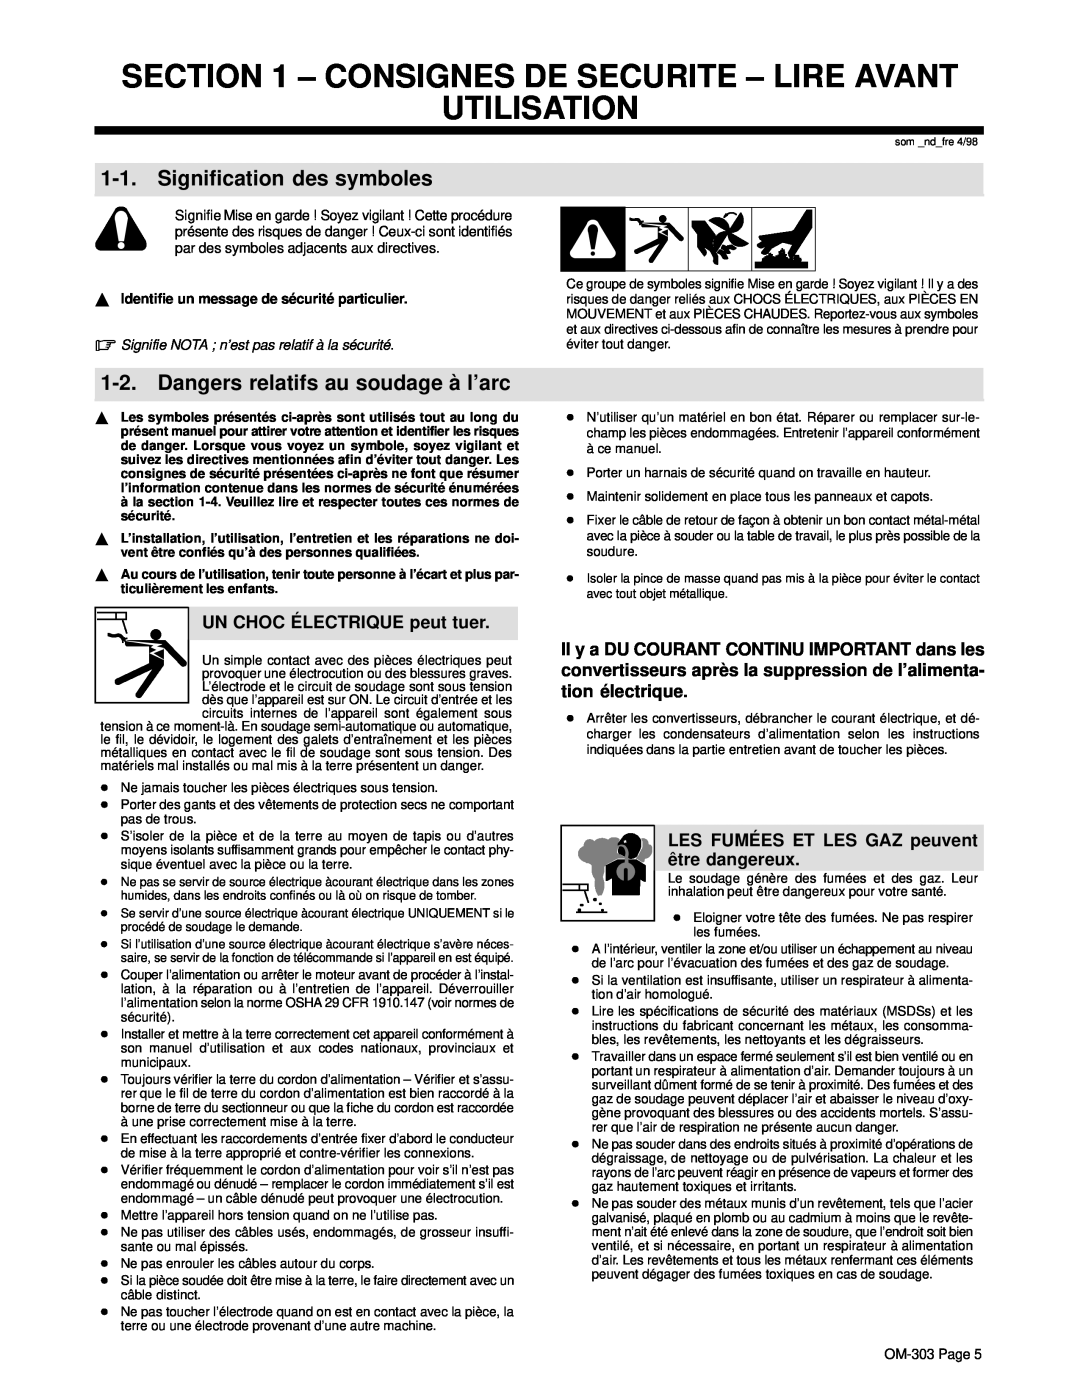 Hobart OM-303 Consignes De Securite - Lire Avant Utilisation, Signification des symboles, UN CHOC É LECTRIQUE peut tuer 